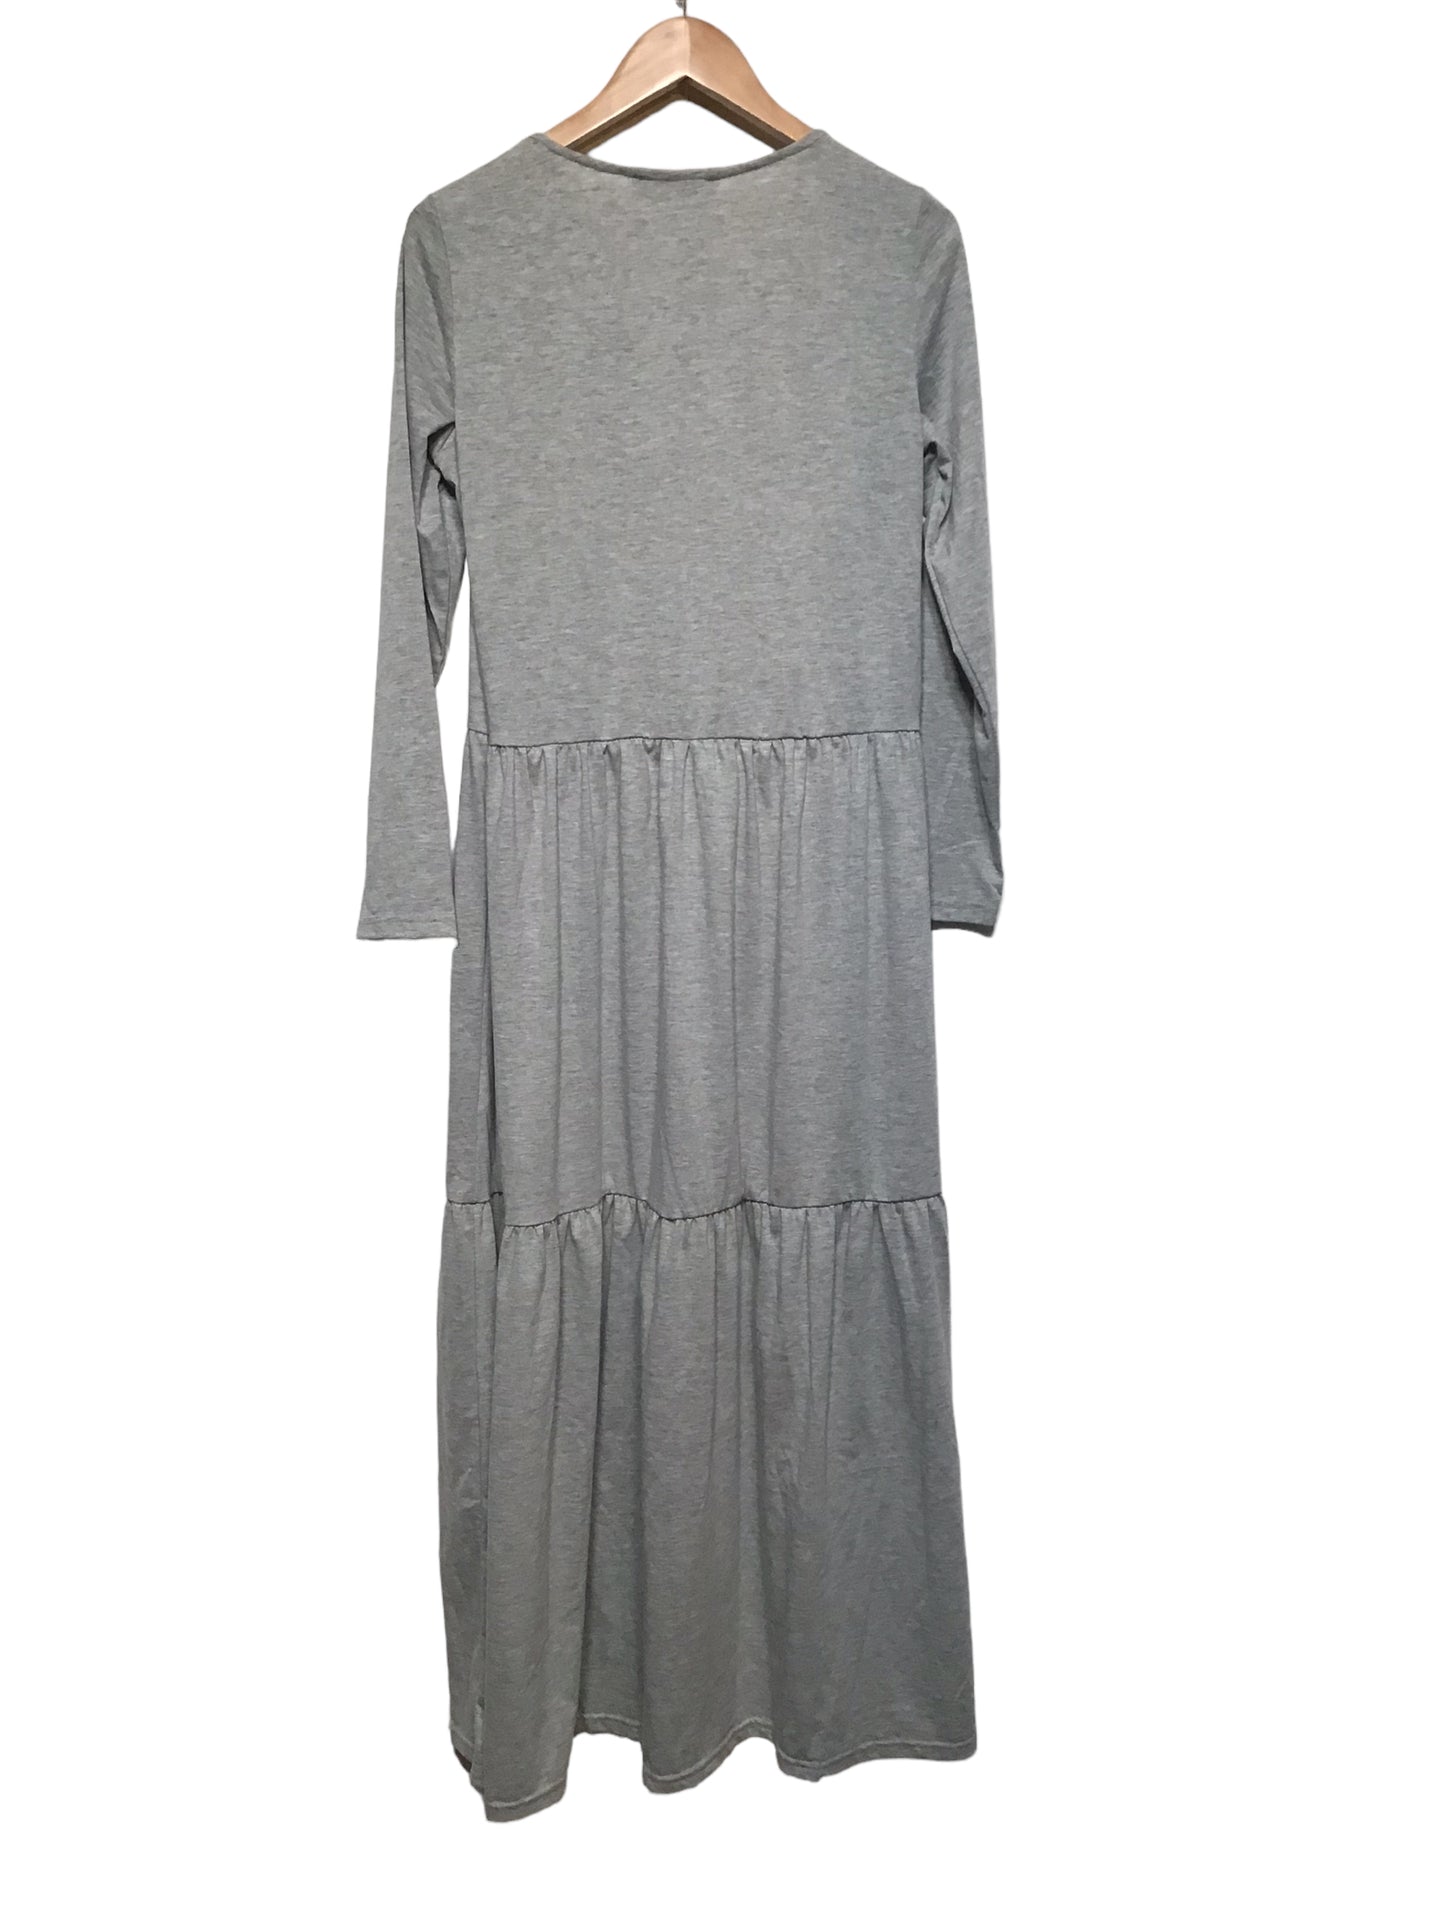 Zanzea Dress (Size M)